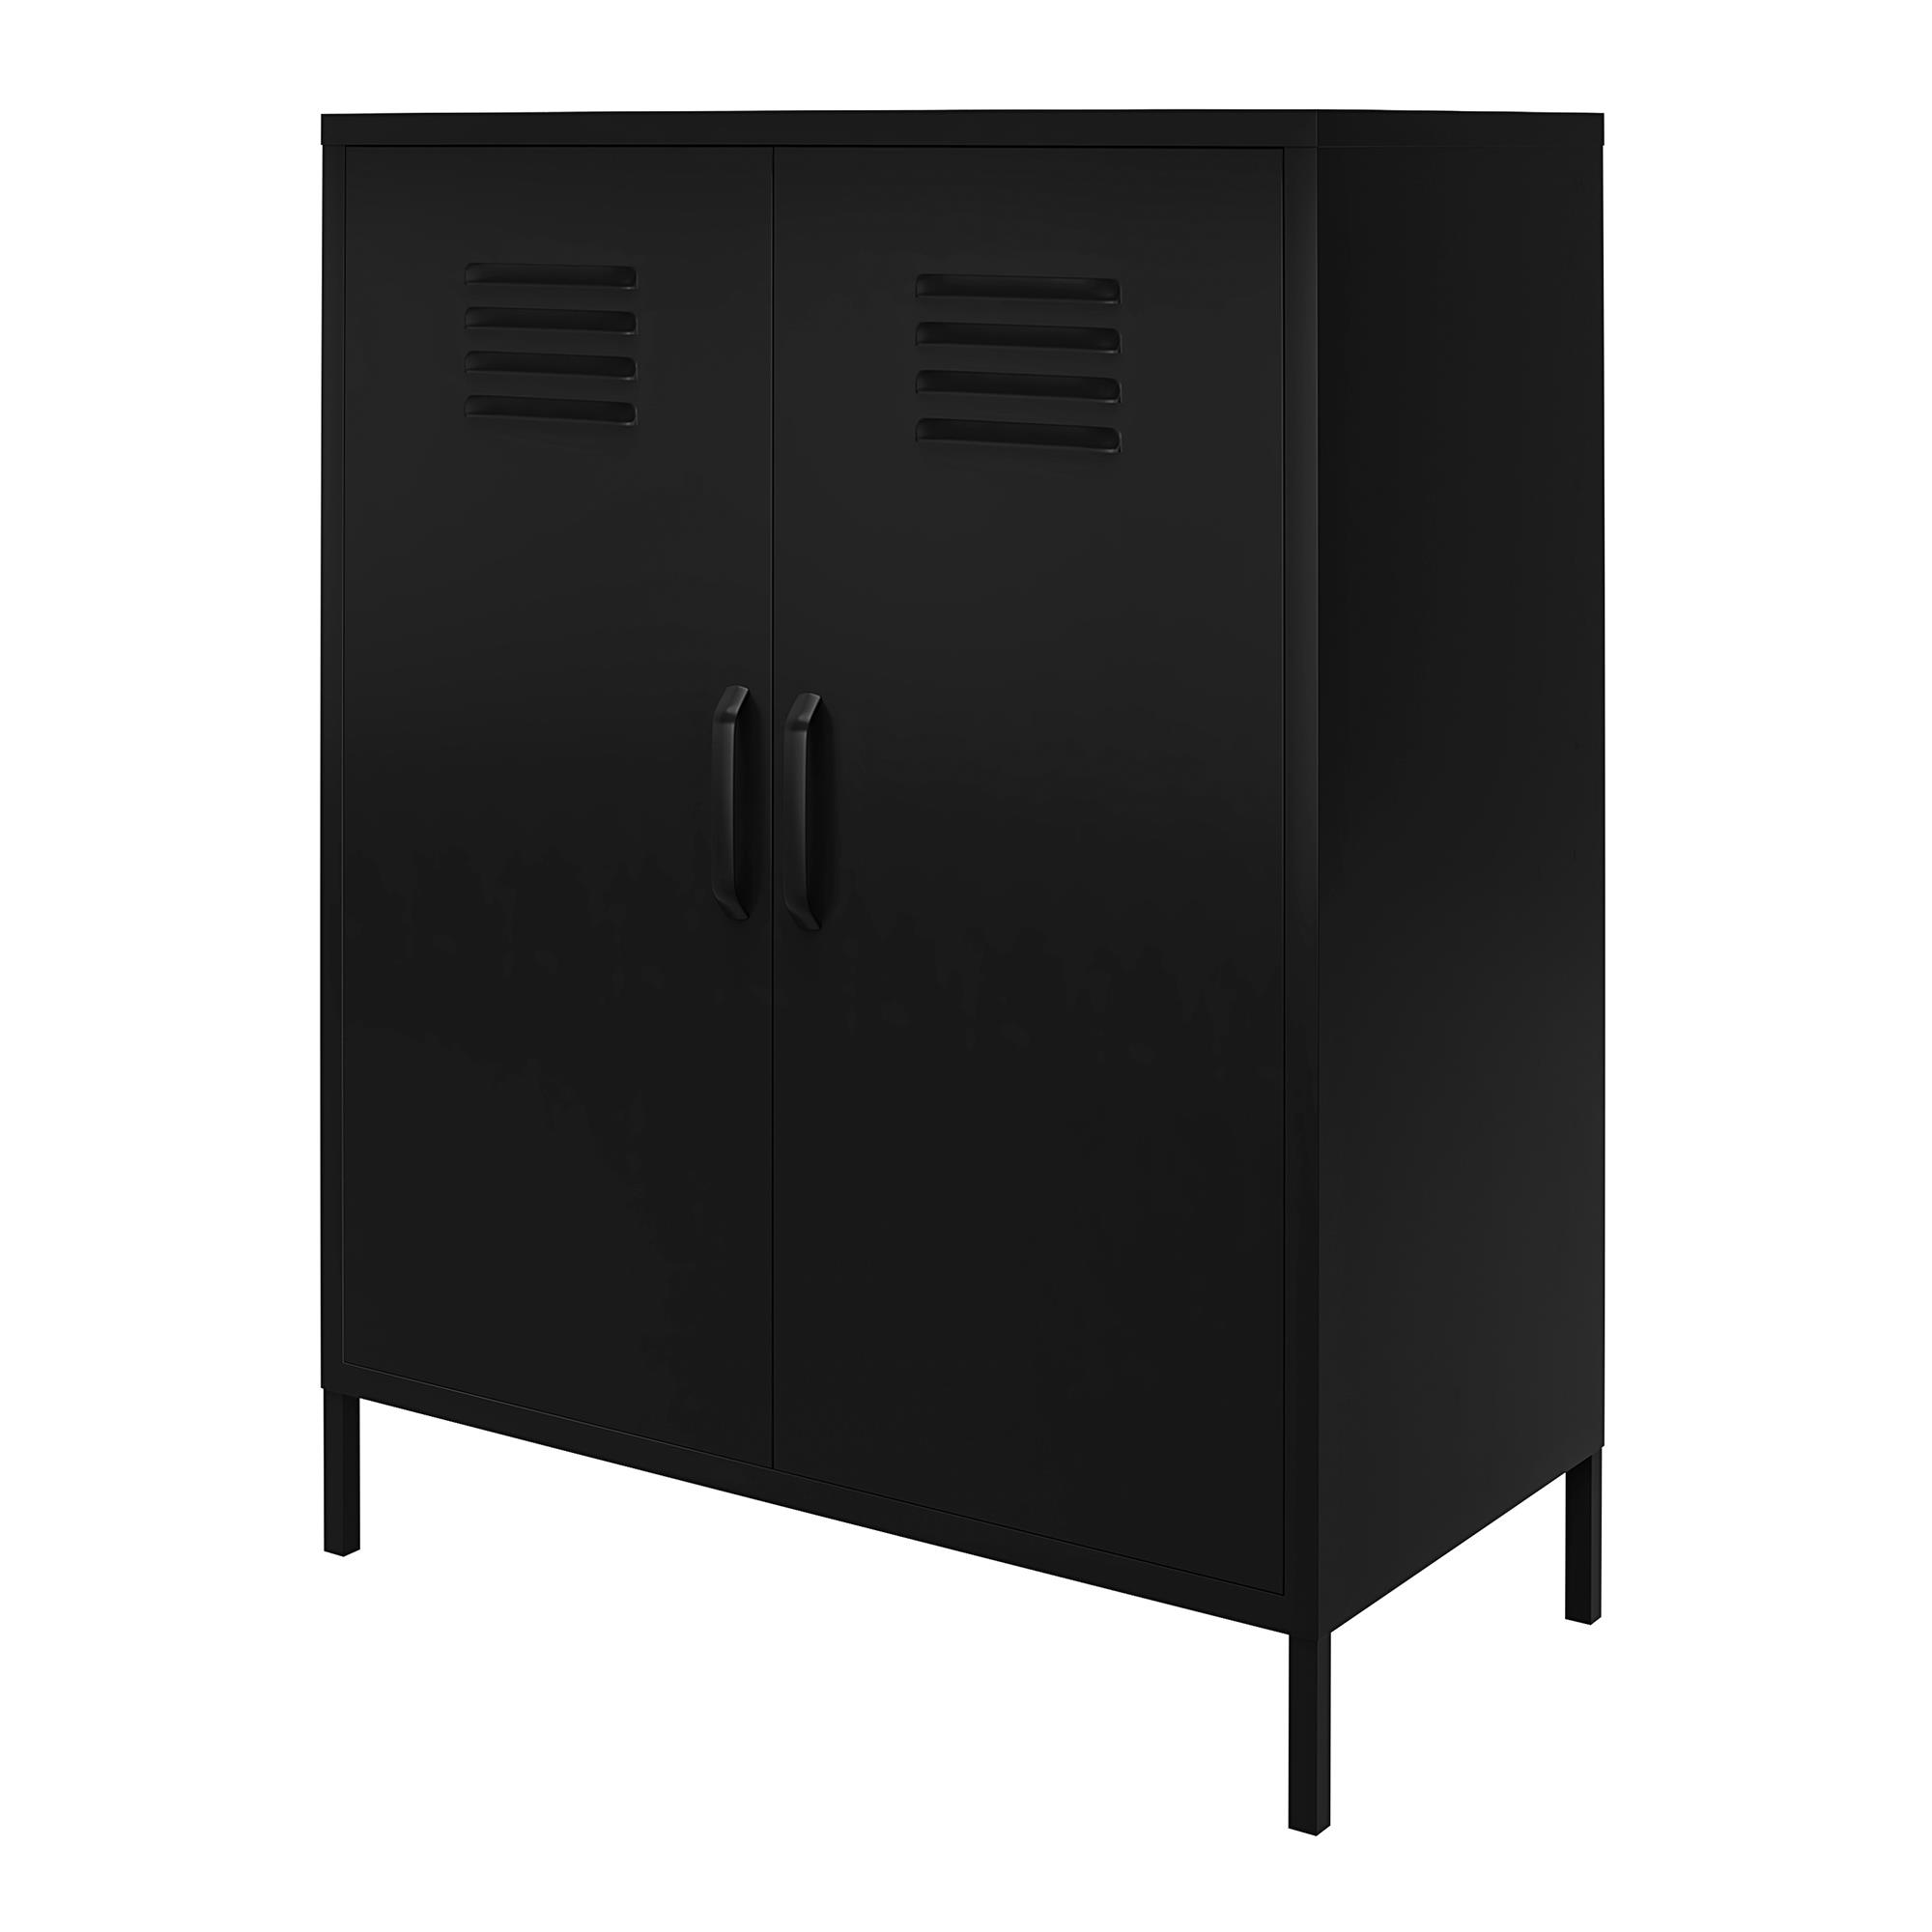 RealRooms Shadwick 2 Door Metal Locker Storage Cabinet-Mesh Metal Doors, Black